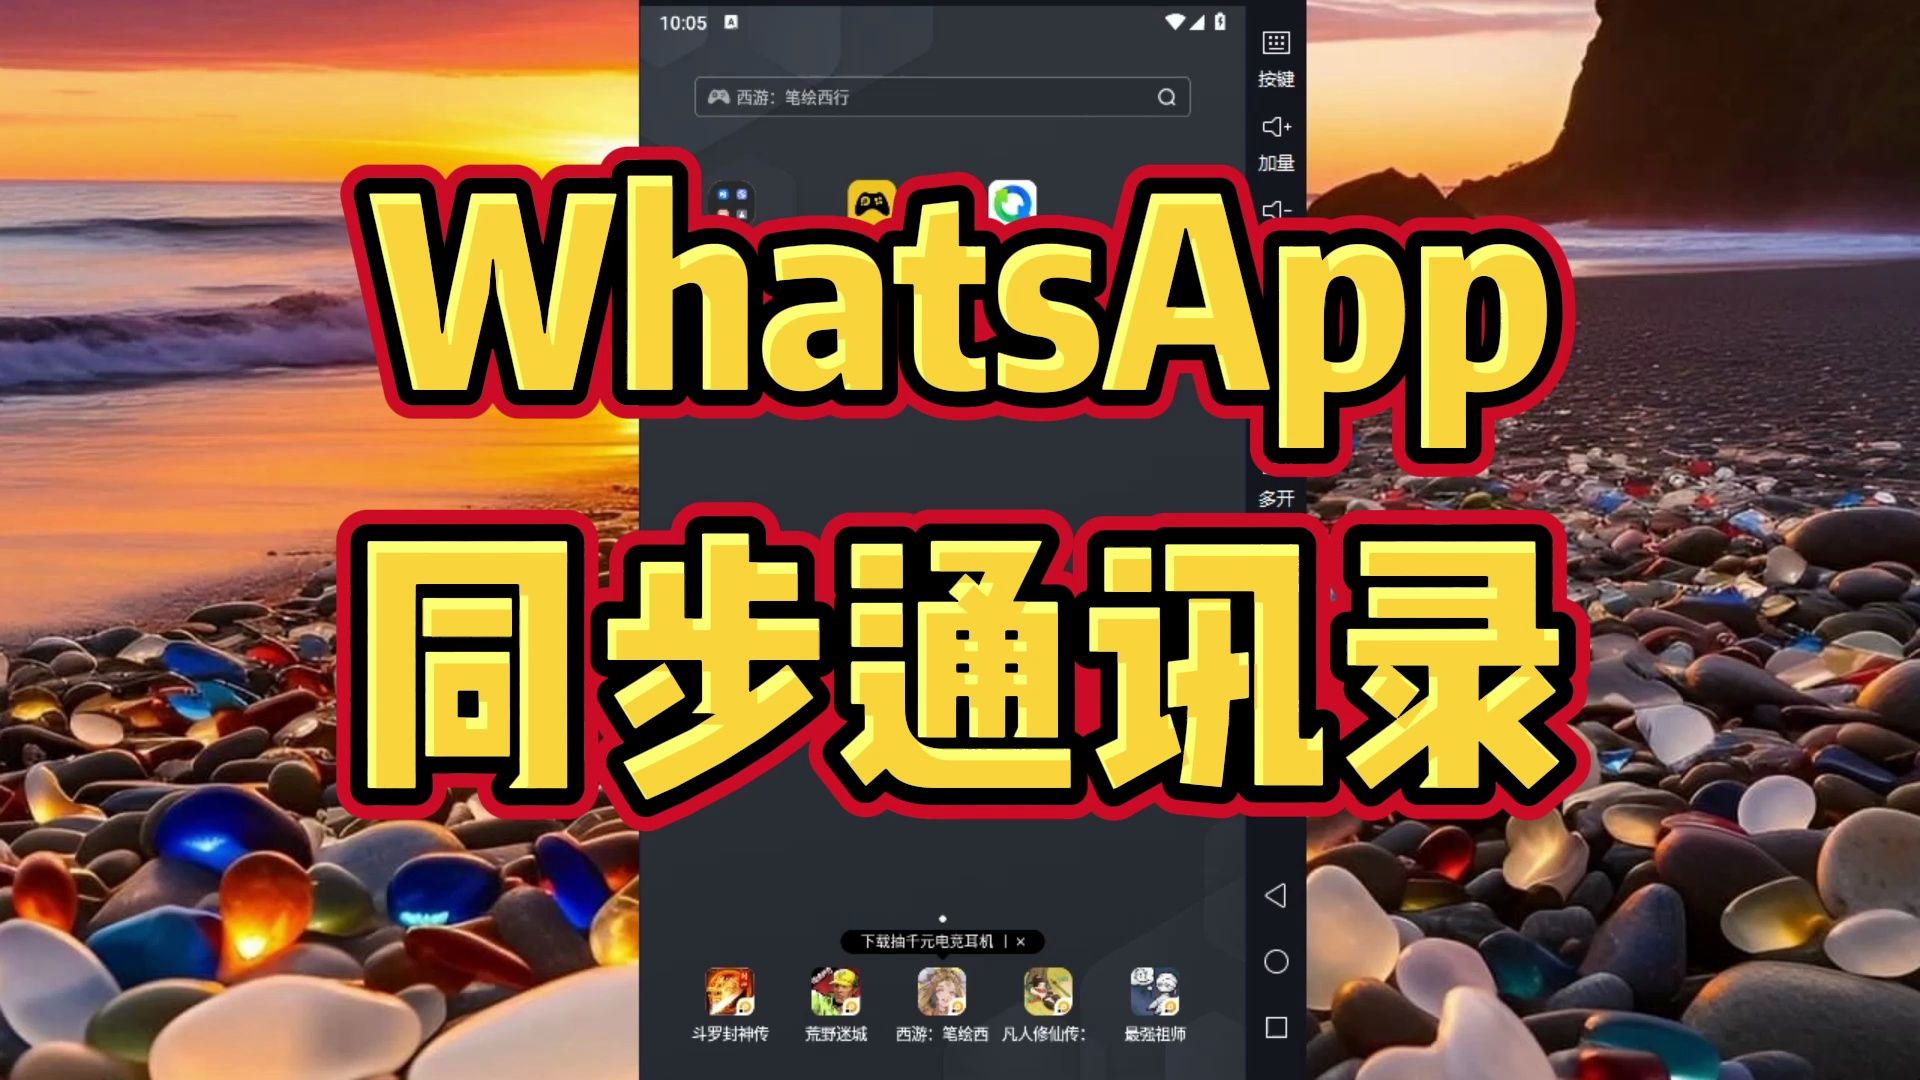 中文版手机电子琴软件_whatsapp中文手机版_中文版手机电子琴软件下载